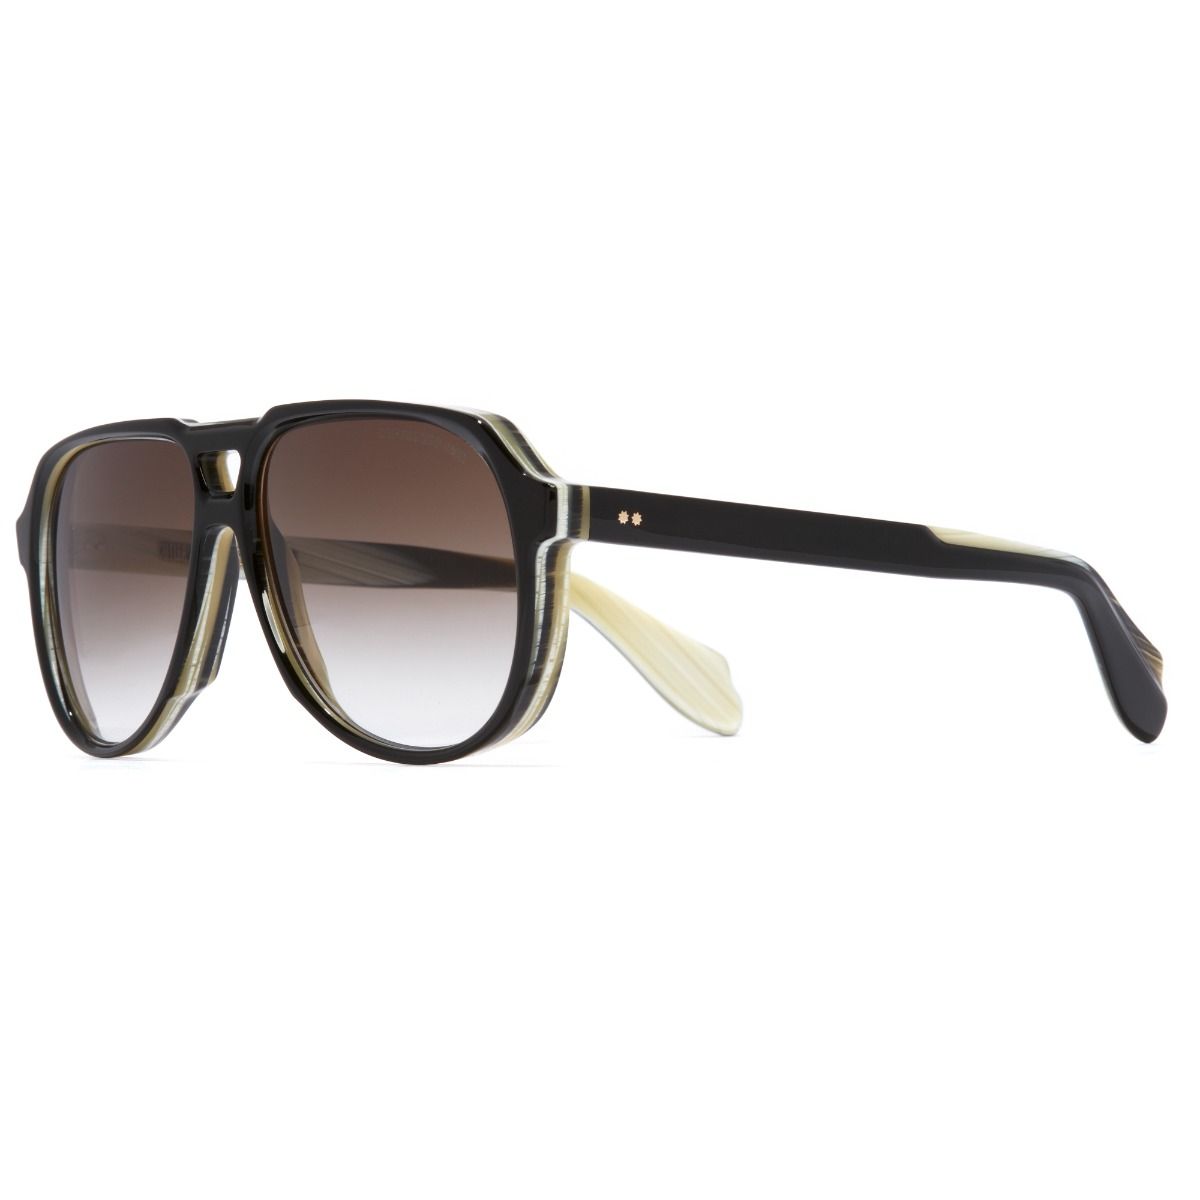 9782 Aviator Sunglasses-Black on Horn